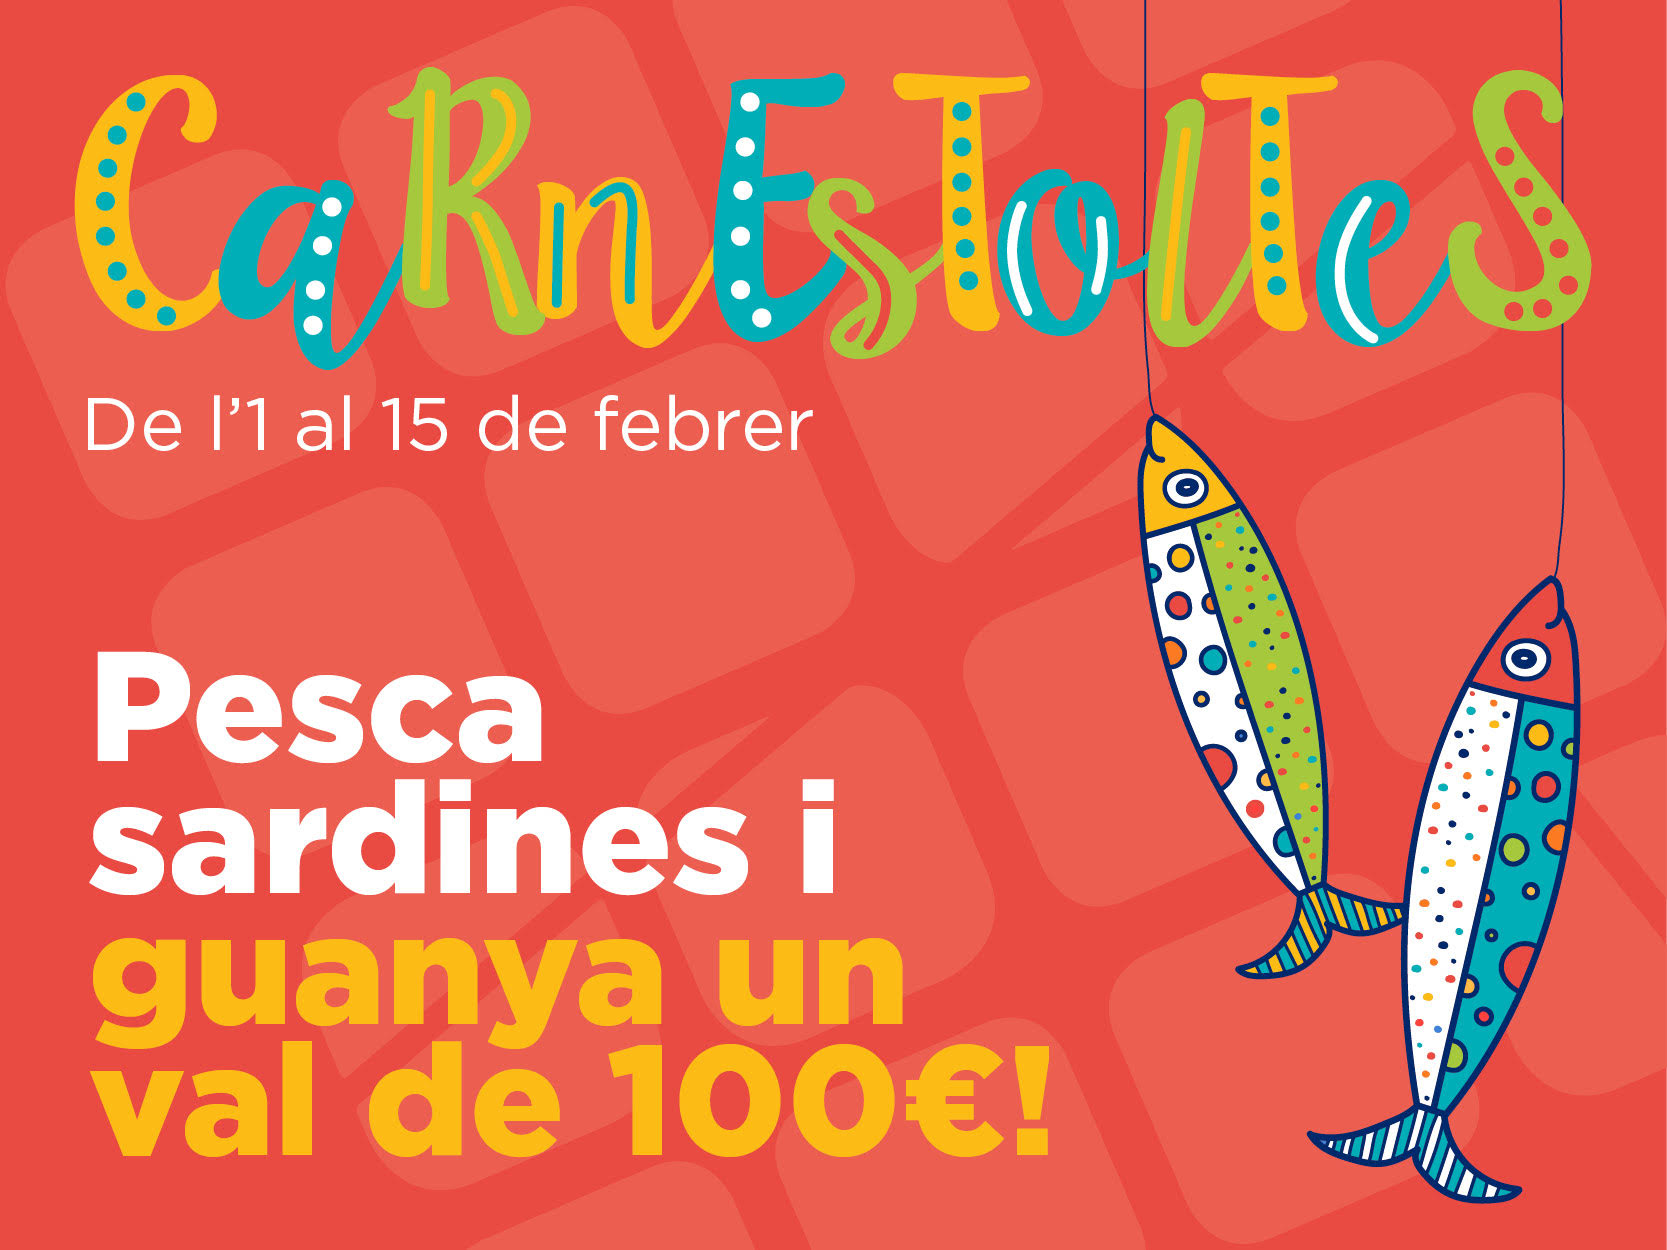 Celebra el Carnestoltes a Encantsnous i guanya un dels vals de compra per valor de 100€